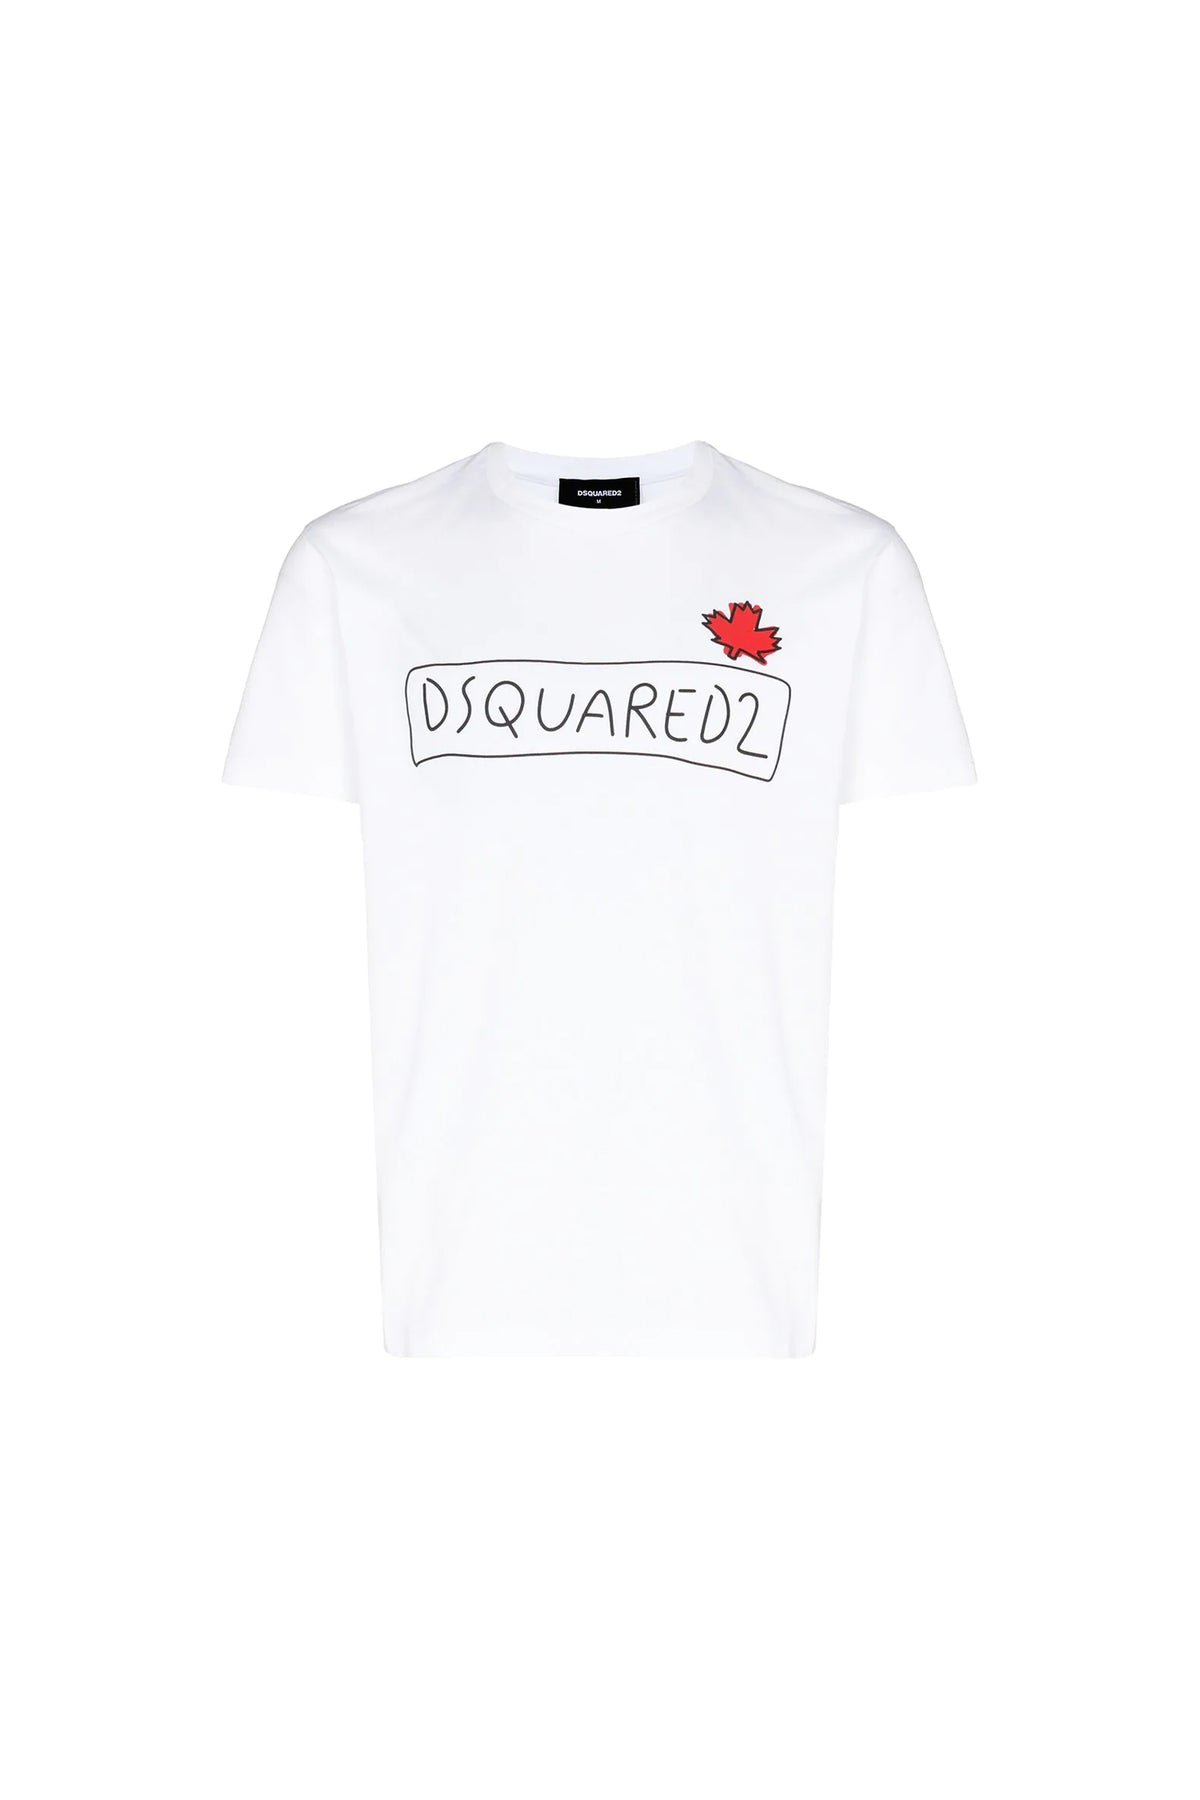 Dsquared2 doodle-print T-shirt